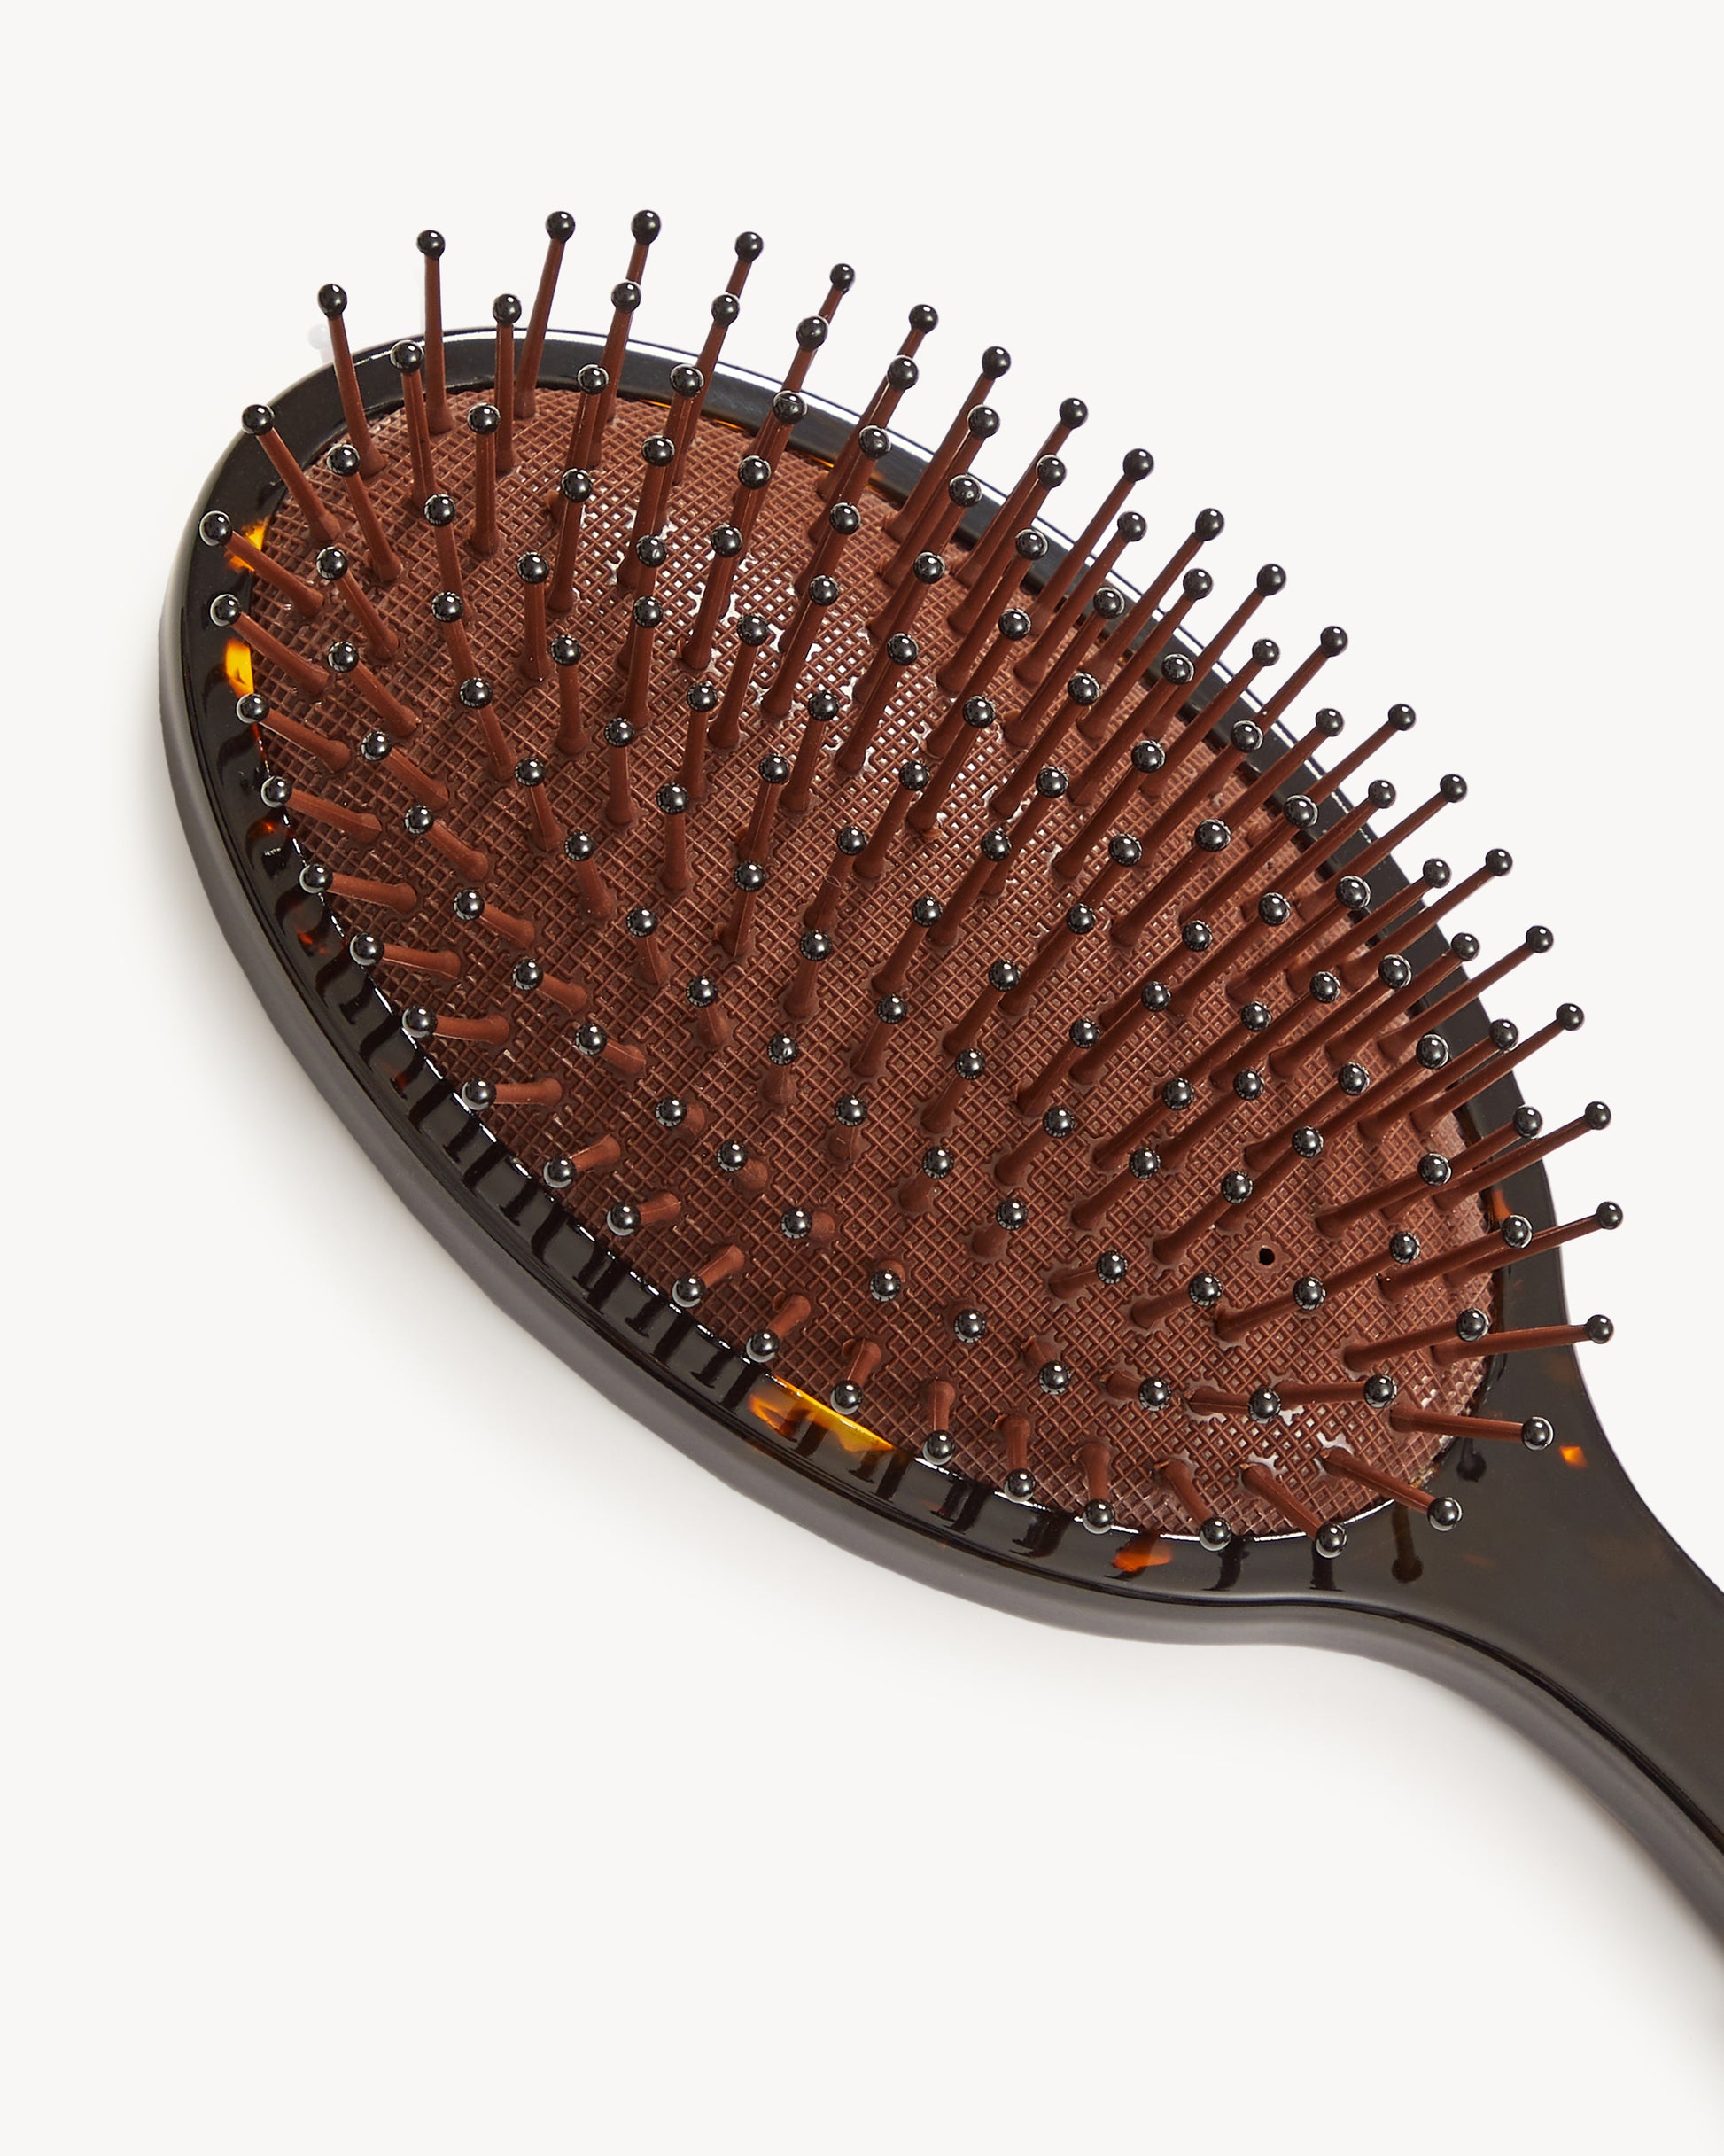 MACHETE Grande Detangling Hair Brush in Dark Tortoise